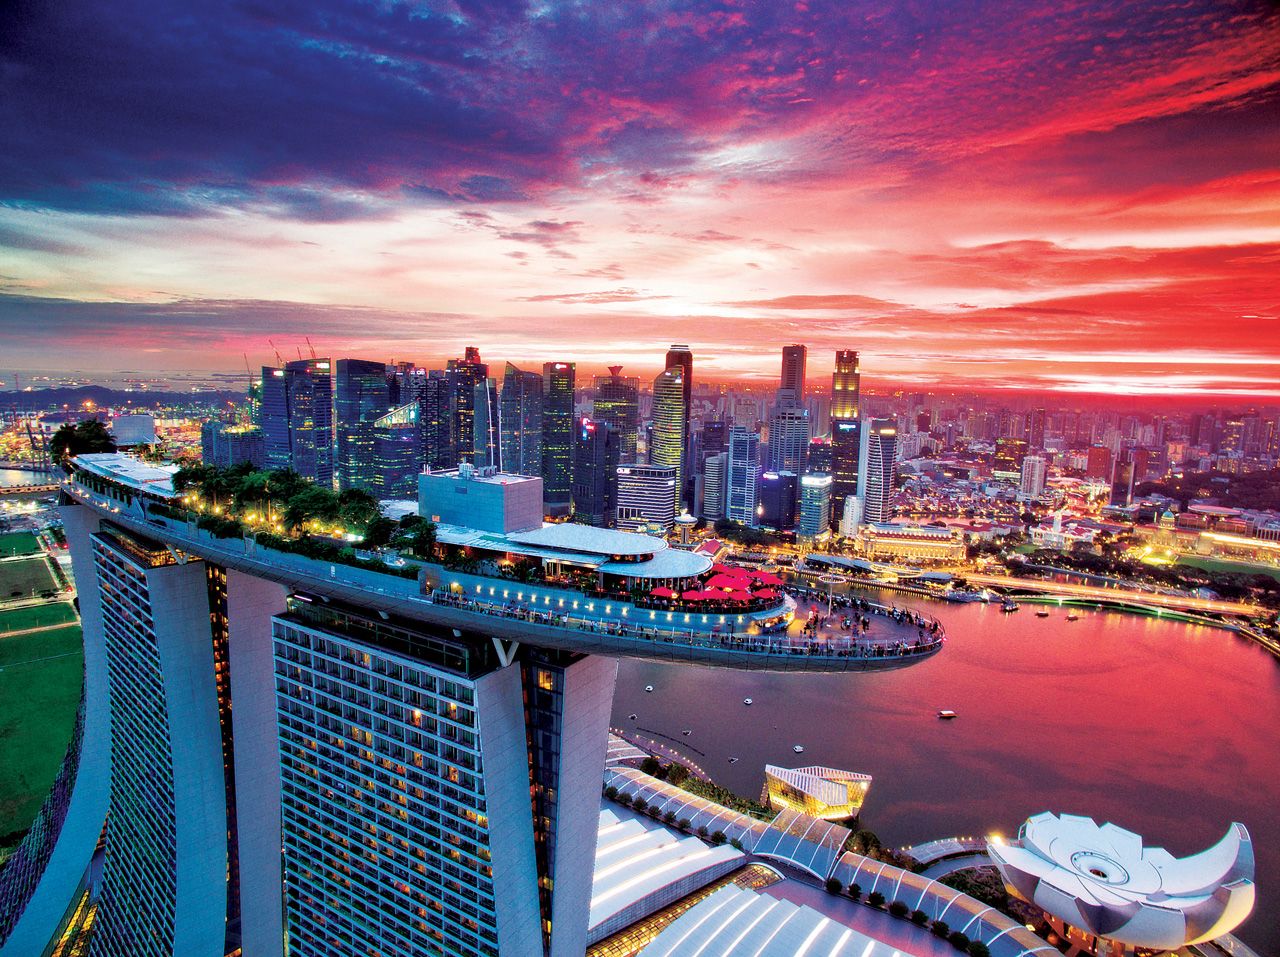 マリーナベイ サンズに上る3つの方法 シンガポールの絶景をその目に シンガポール トラベルjp 旅行ガイド